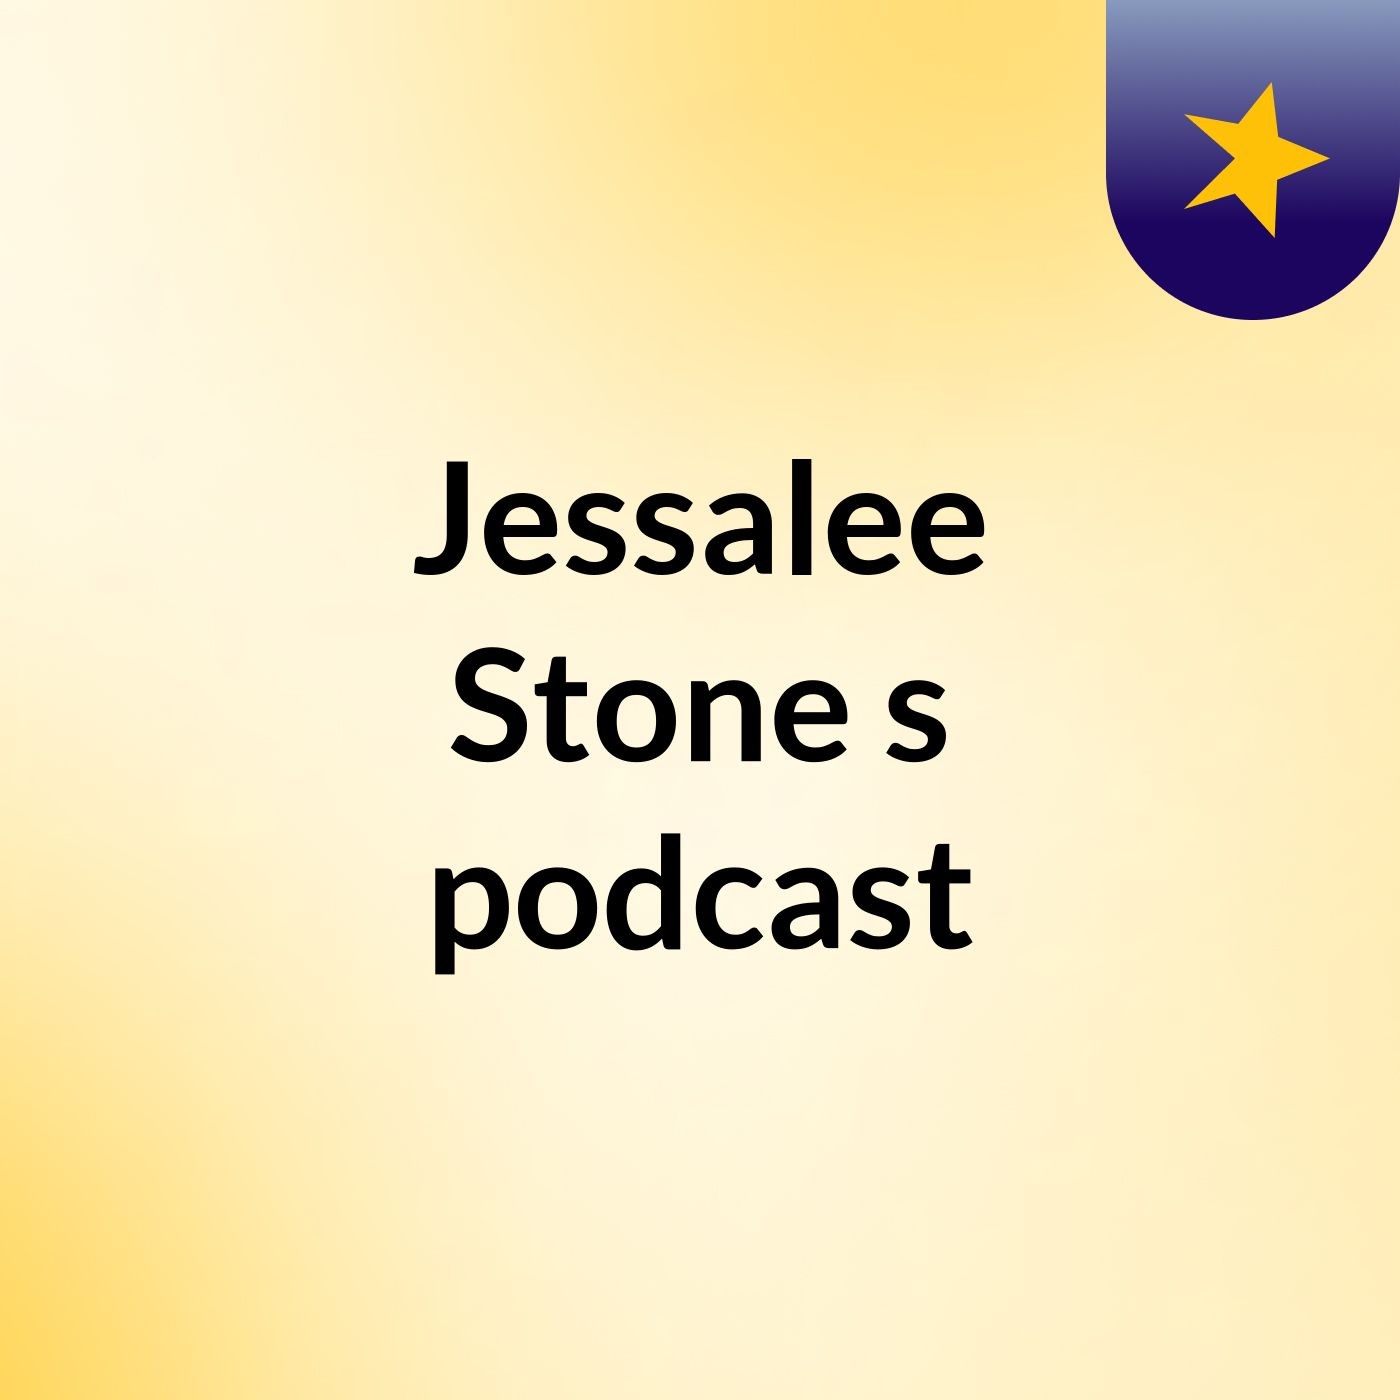 Jessalee Stone's podcast